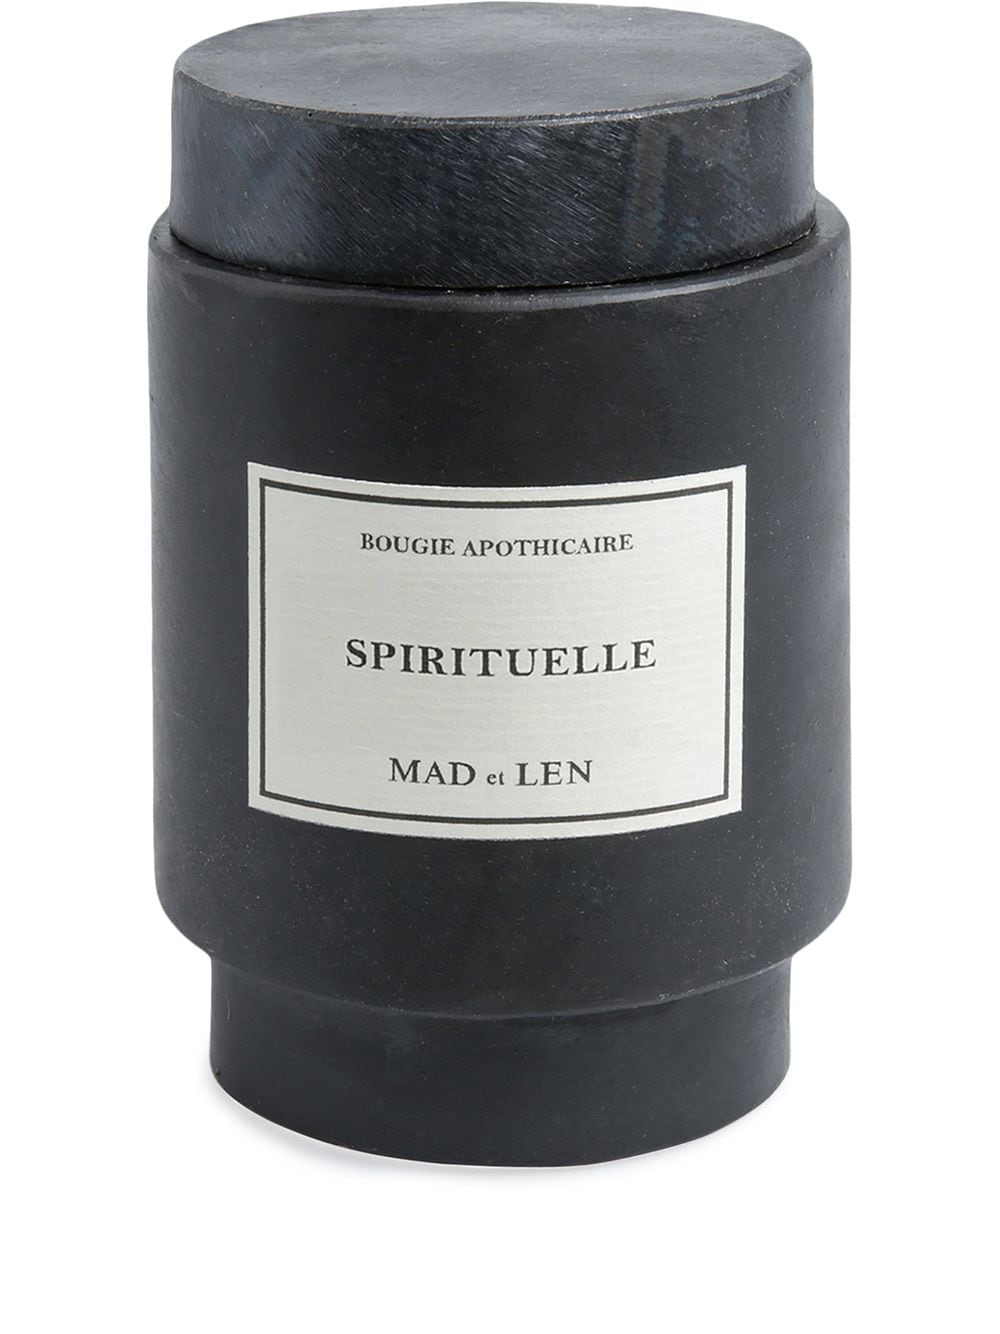 MAD et LEN Spirituelle Bougie Monarchia candle - Black von MAD et LEN